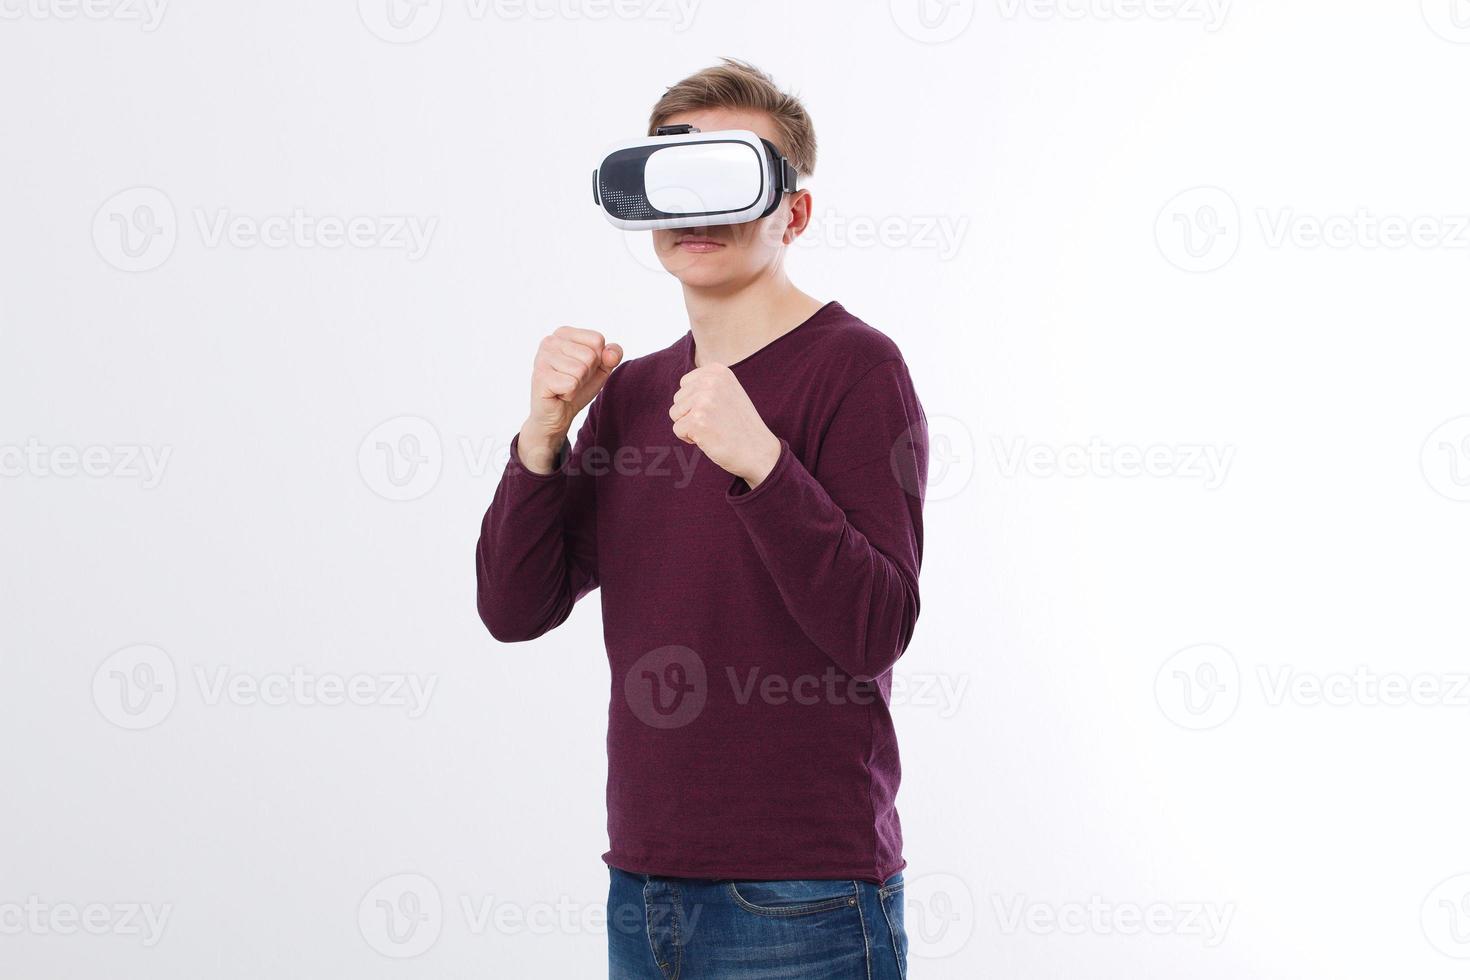 jonge een dragen van virtual reality bril geïsoleerd op een witte achtergrond. vr bril technologie headset en boksspel. kopieer ruimte en maak een mock-up foto